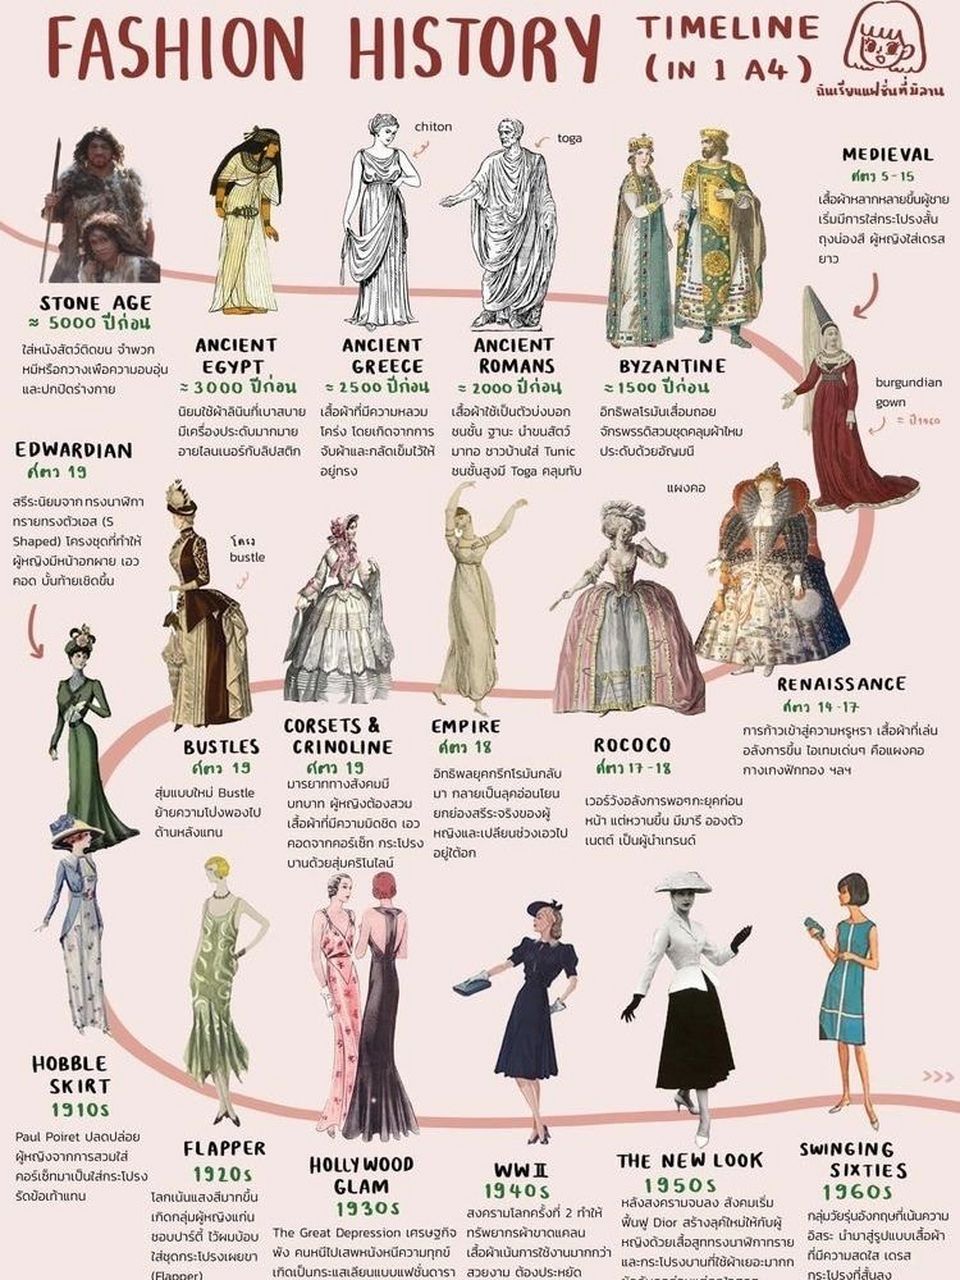 西方服装进化史 一张图解读 西方服装史的演变历程 觉得很有趣 就放上